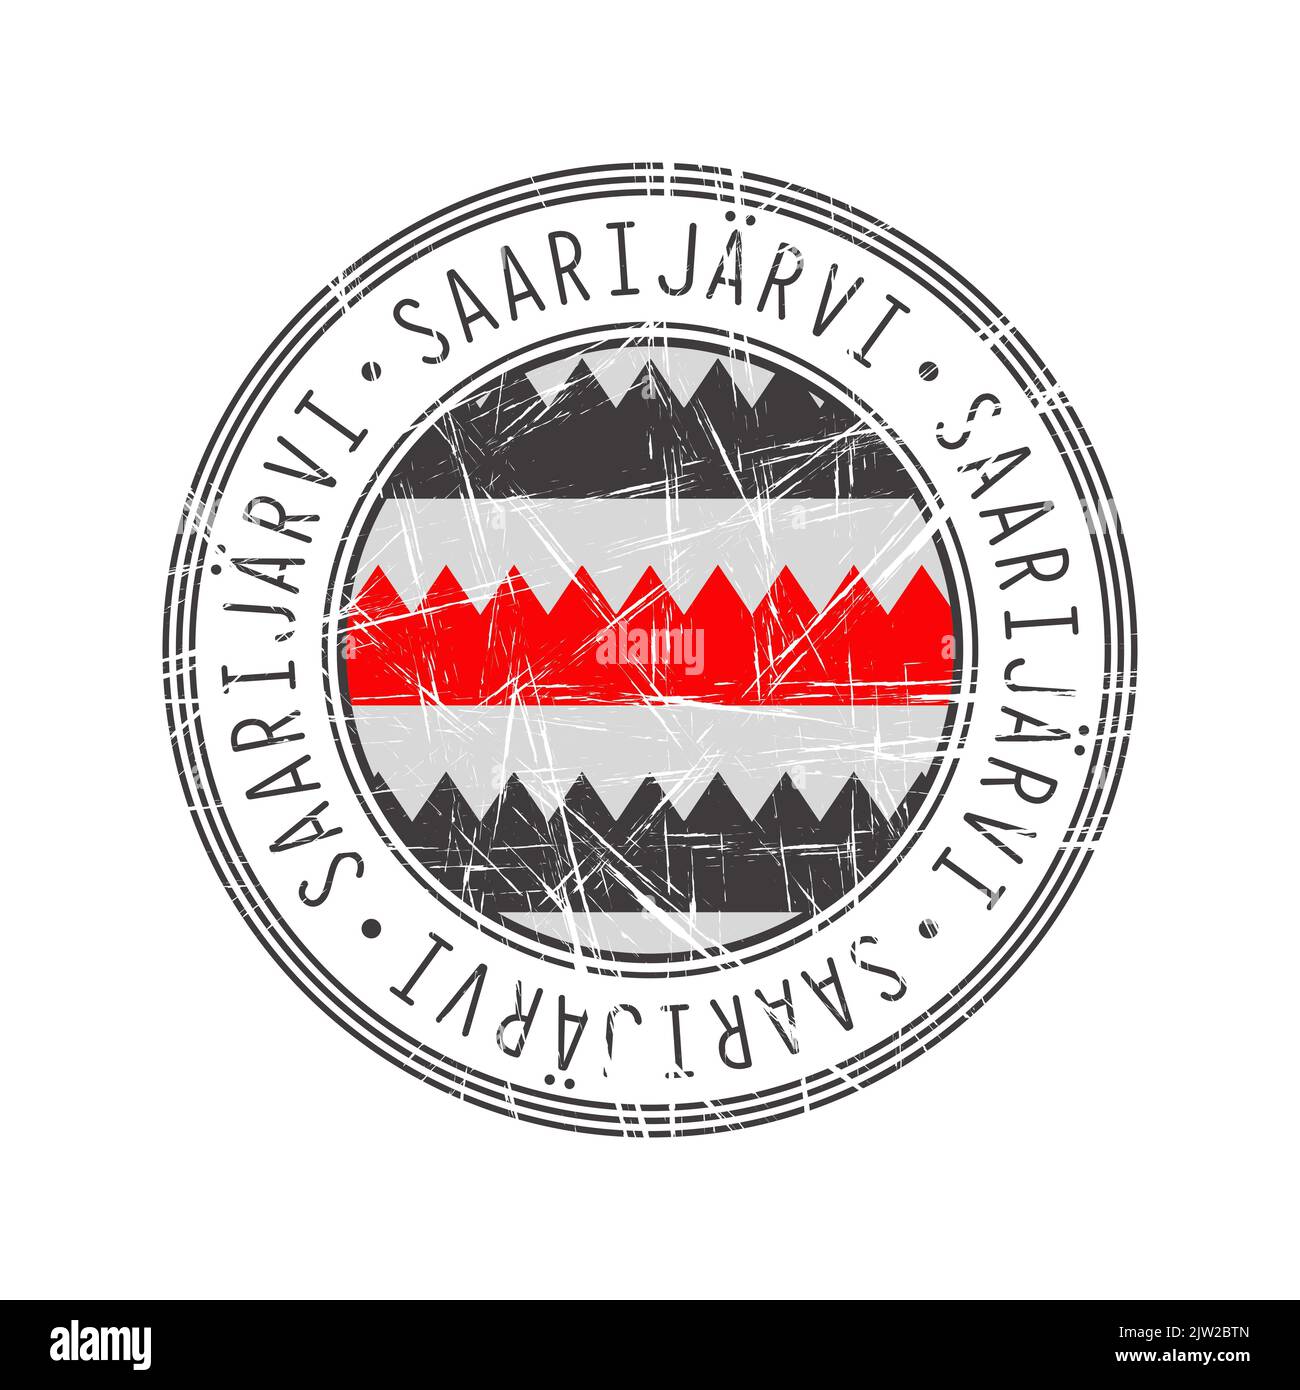 Saarijarvi, Finnland. Grunge Poststempel auf weißem Hintergrund Stockfoto